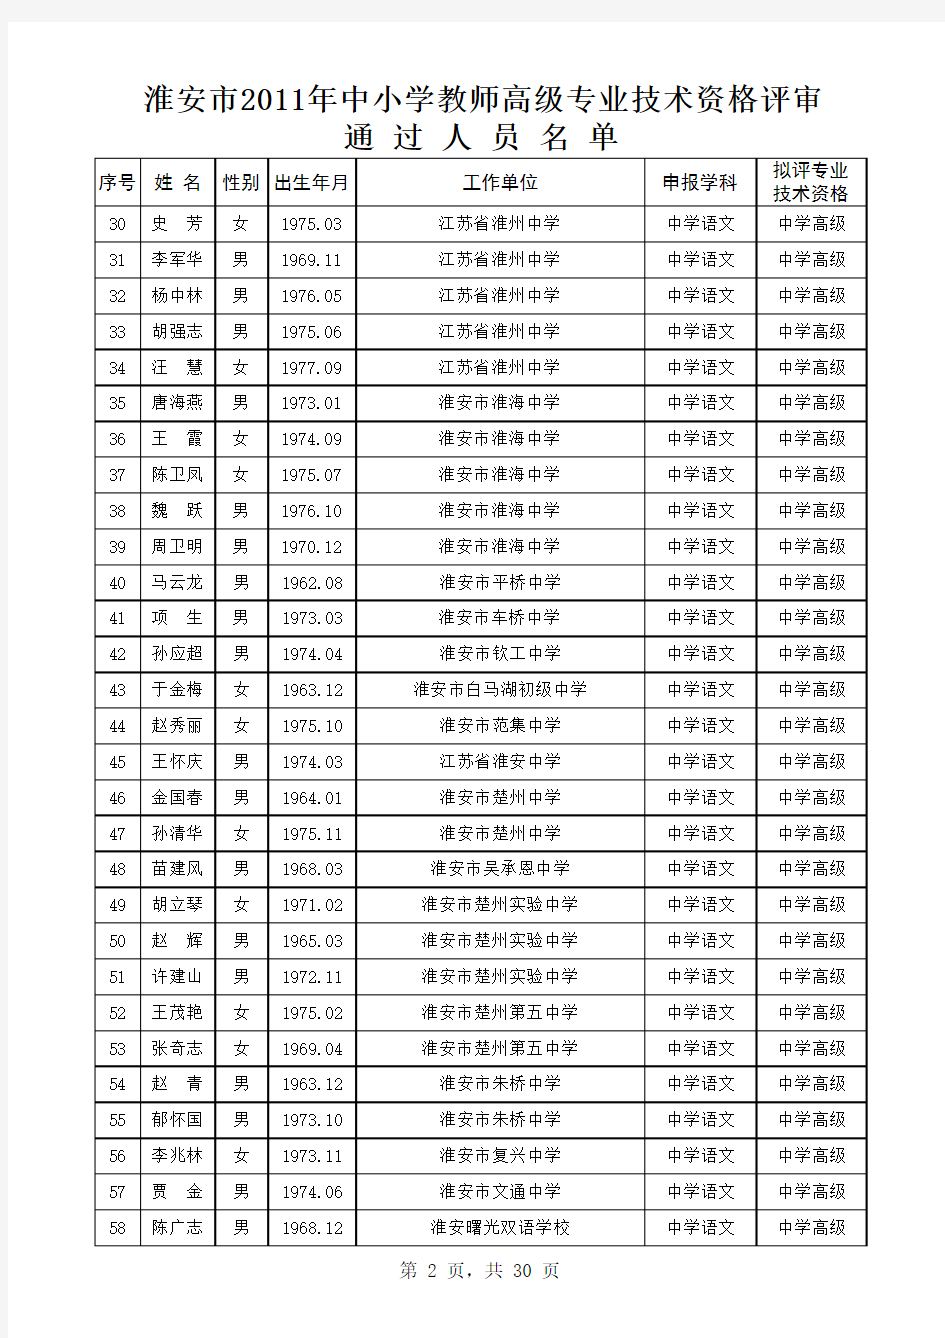 2011年淮安市申报中学高级教师公示人员名单